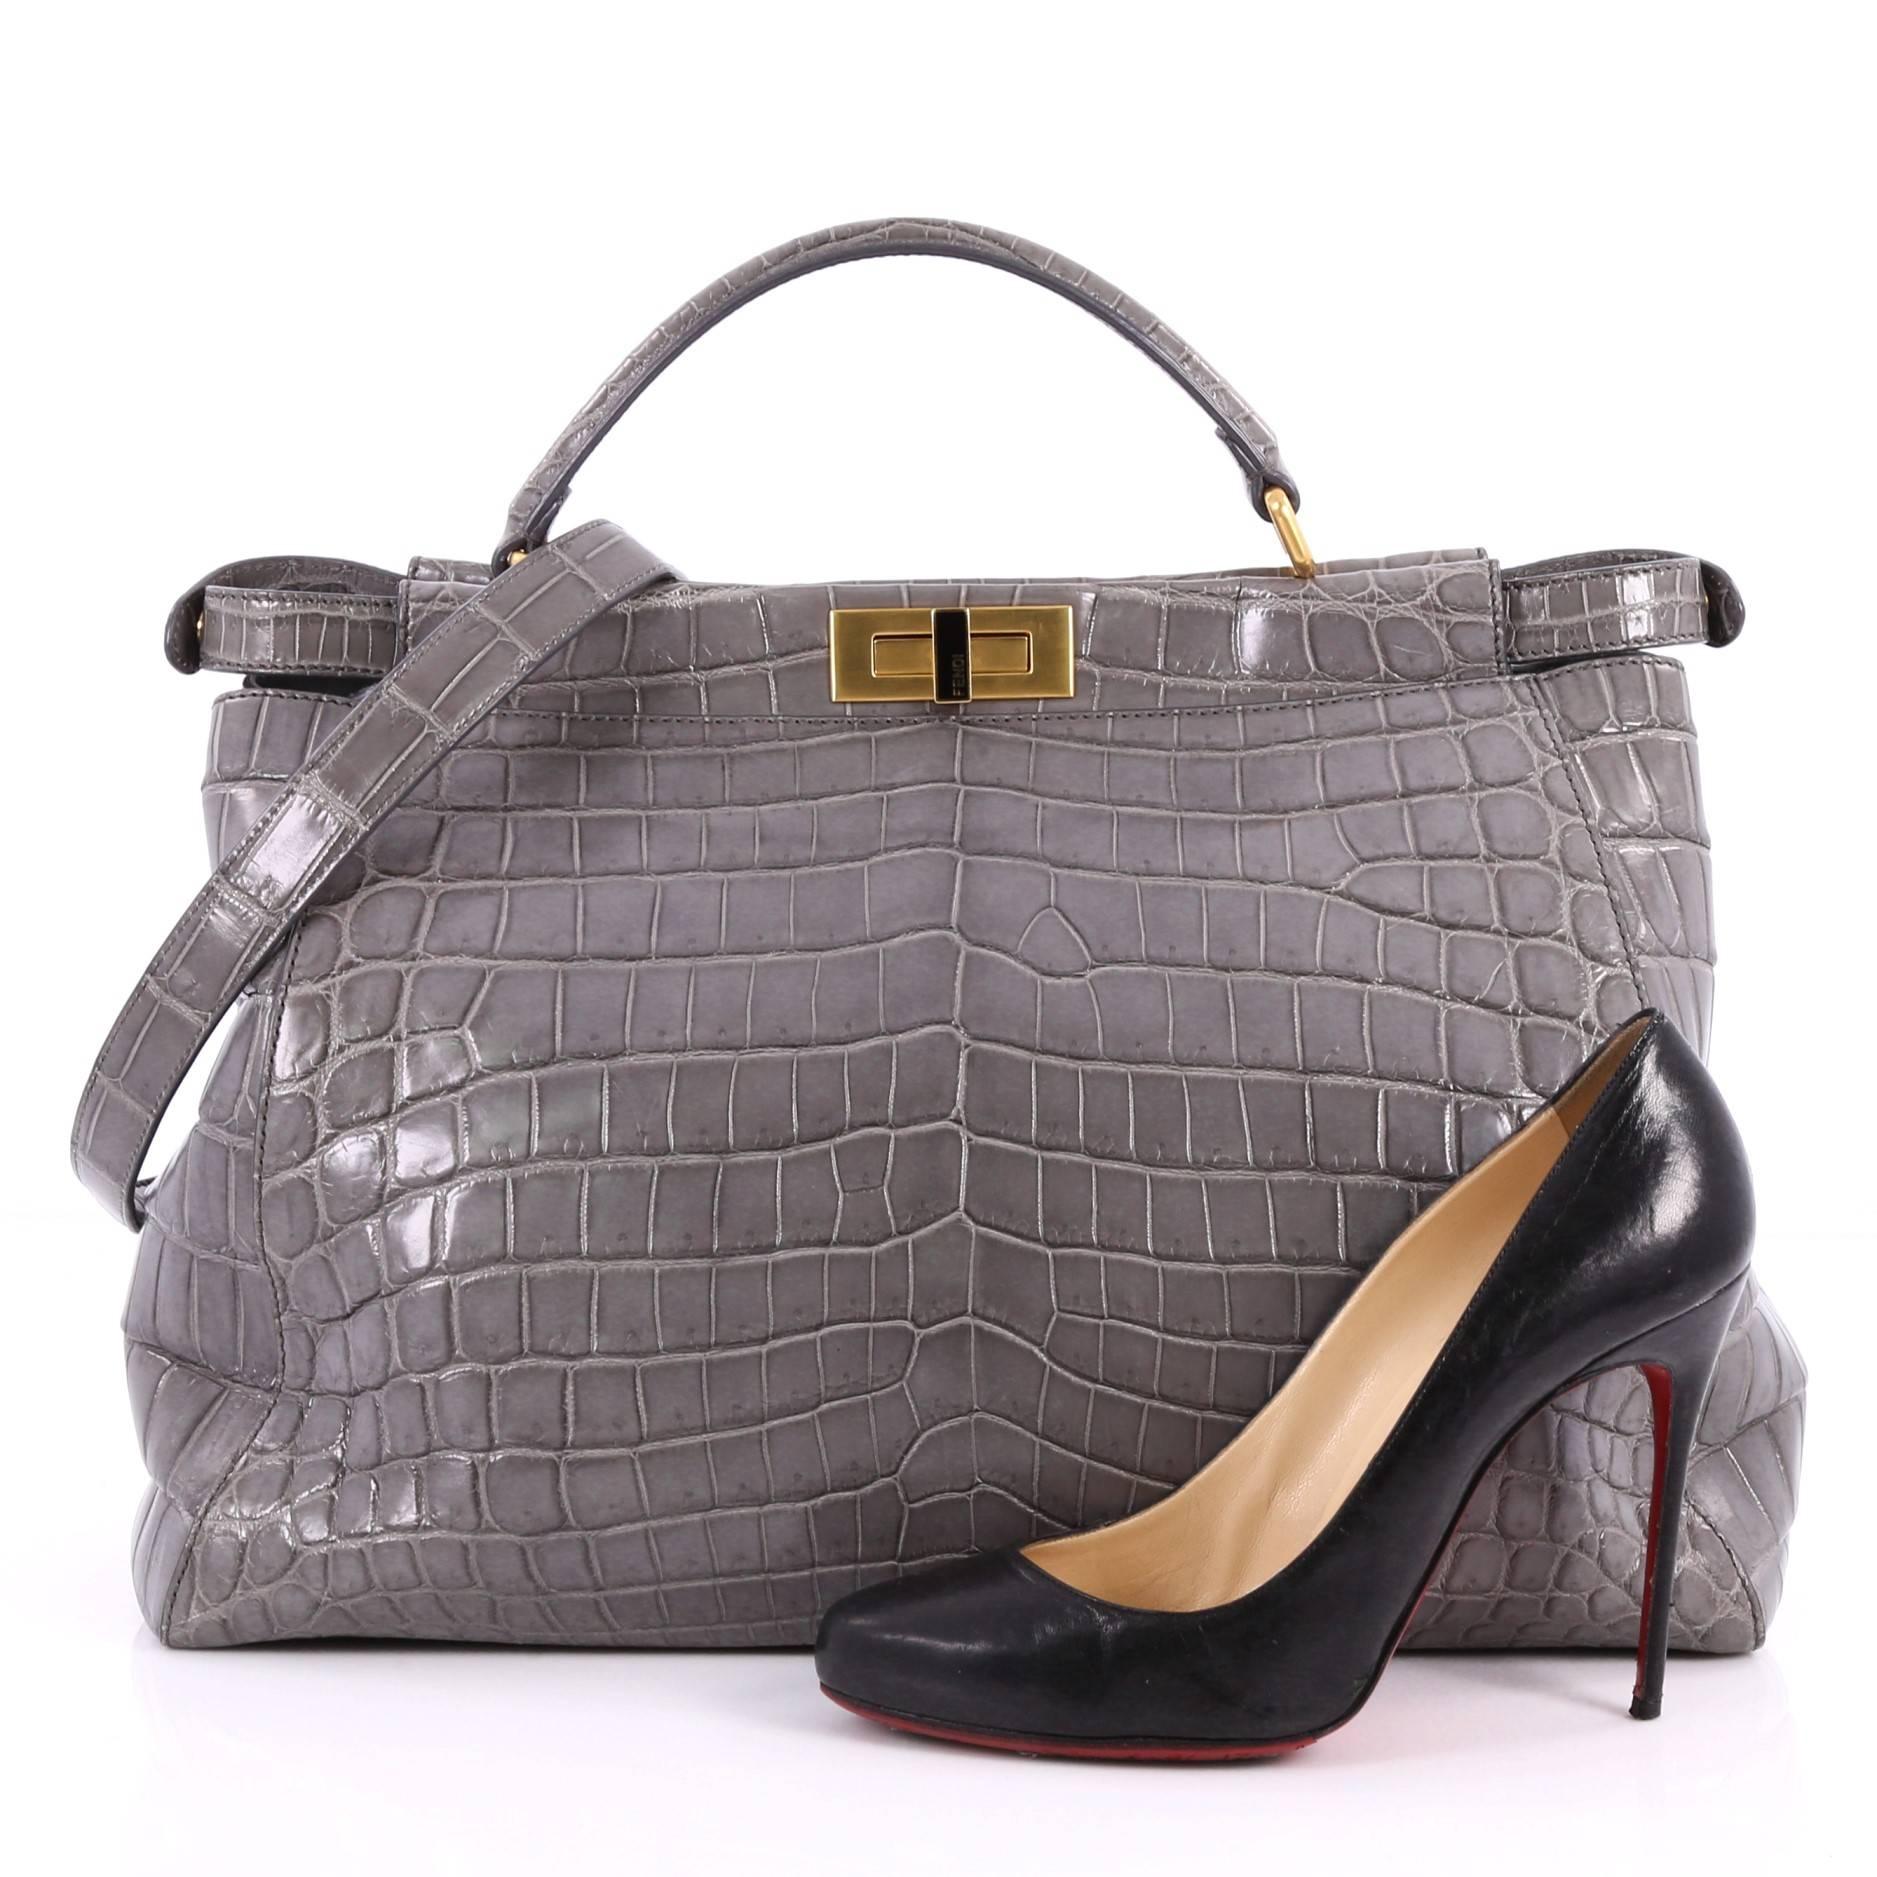 Diese authentische Fendi Peekaboo Handtasche Crocodile Large ist eines der bekanntesten Designs von Fendi und strahlt ein luxuriöses und dennoch minimalistisches Aussehen aus. Diese vielseitige und stilvolle Tasche aus echter grauer Krokodilleder